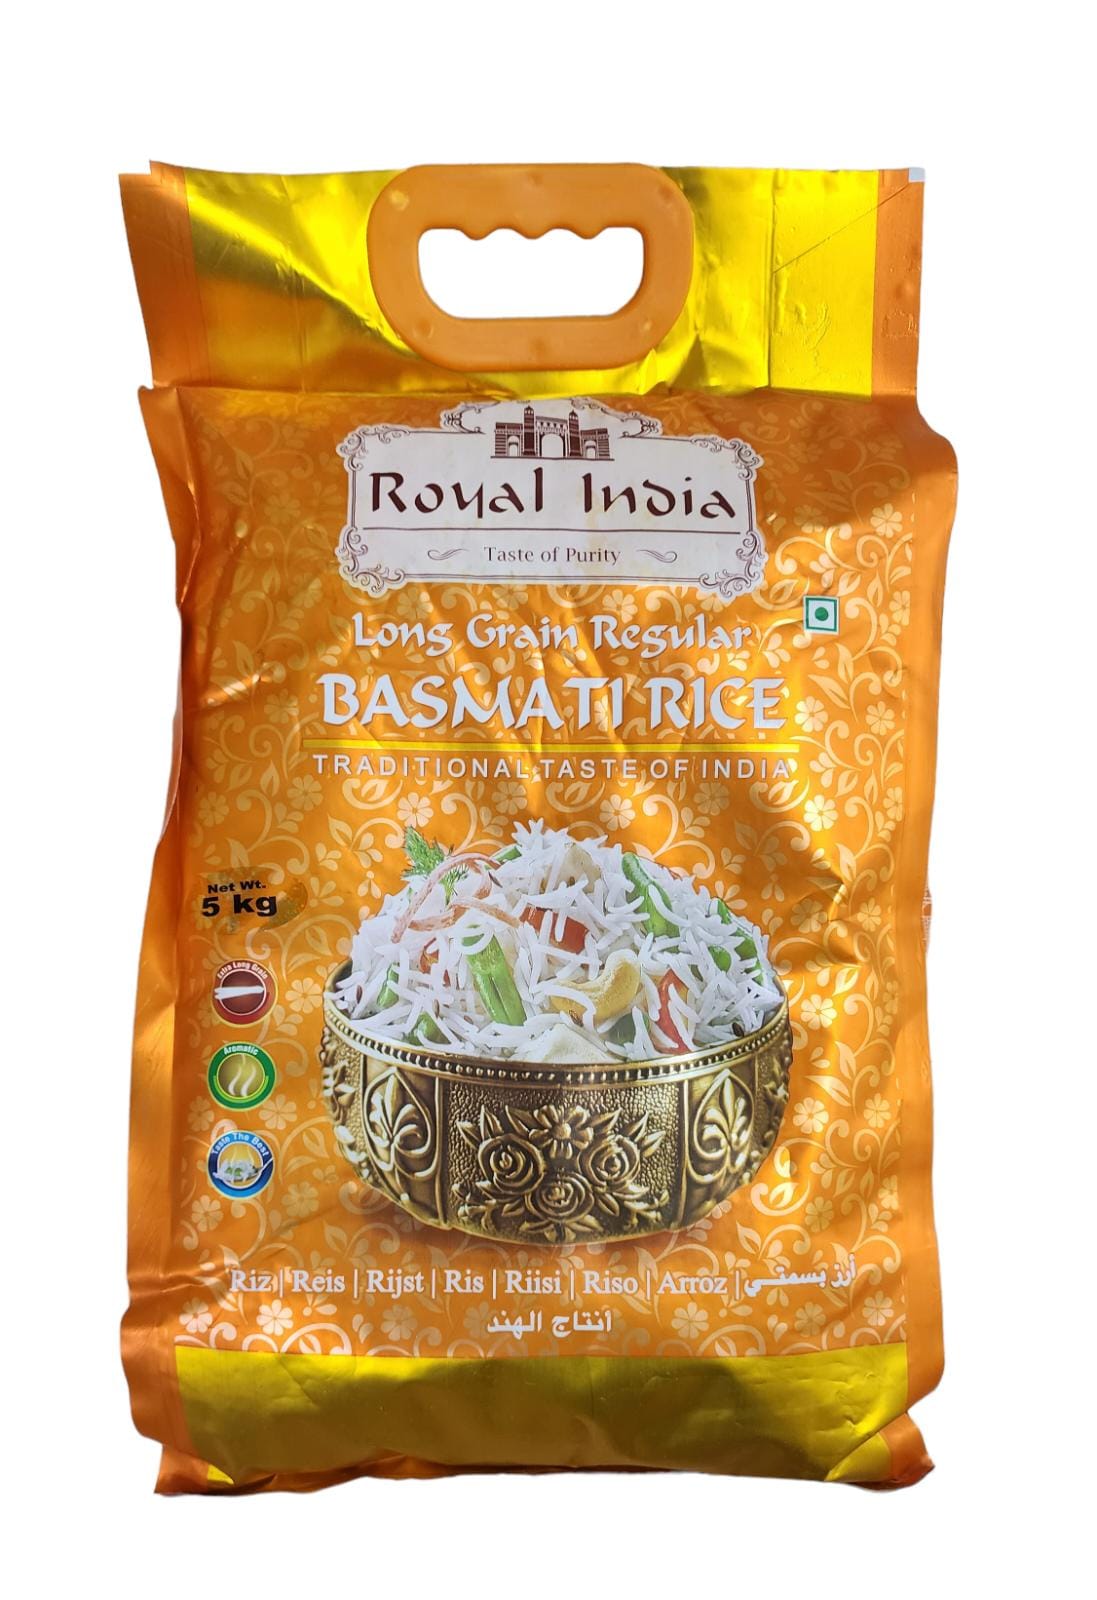 Royal India Long Grain Regular Basmati Rice 5 Kg